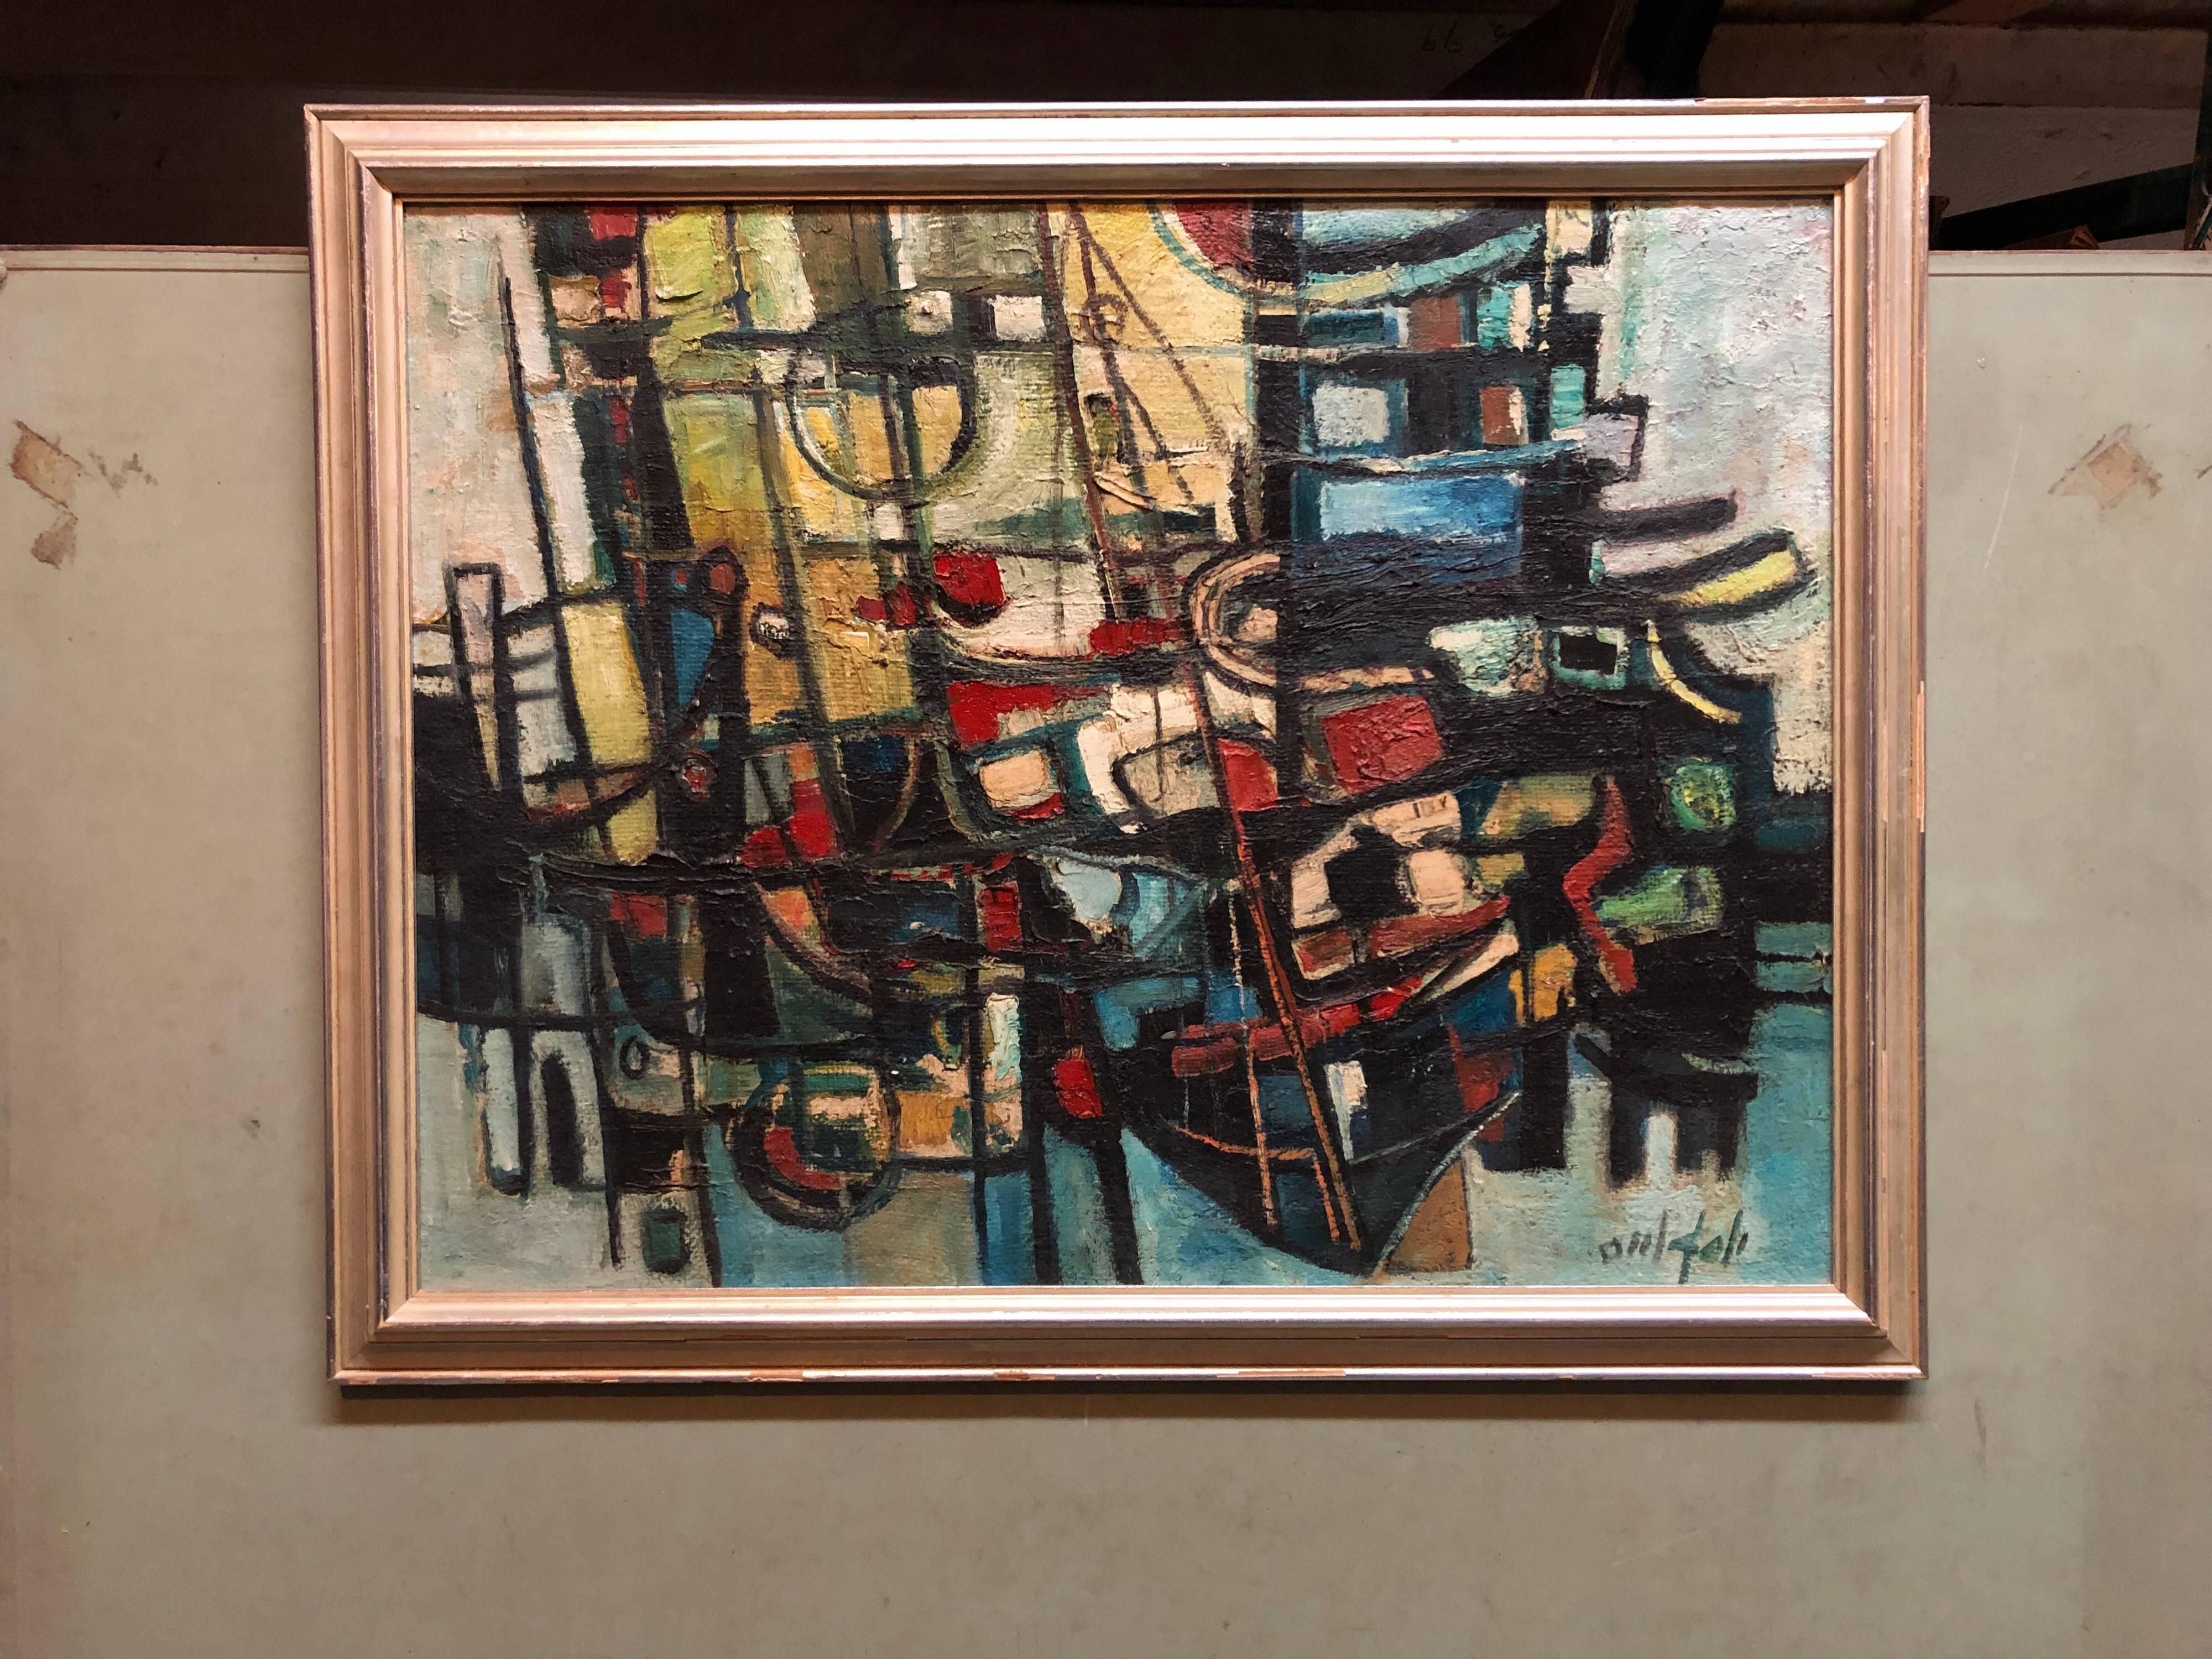 Boats in Harbor Israeli Modernistisches kubistisches abstraktes Ölgemälde Rare, seltene Kibbutz-Kunst (Abstrakter Expressionismus), Painting, von Joseph Weiss